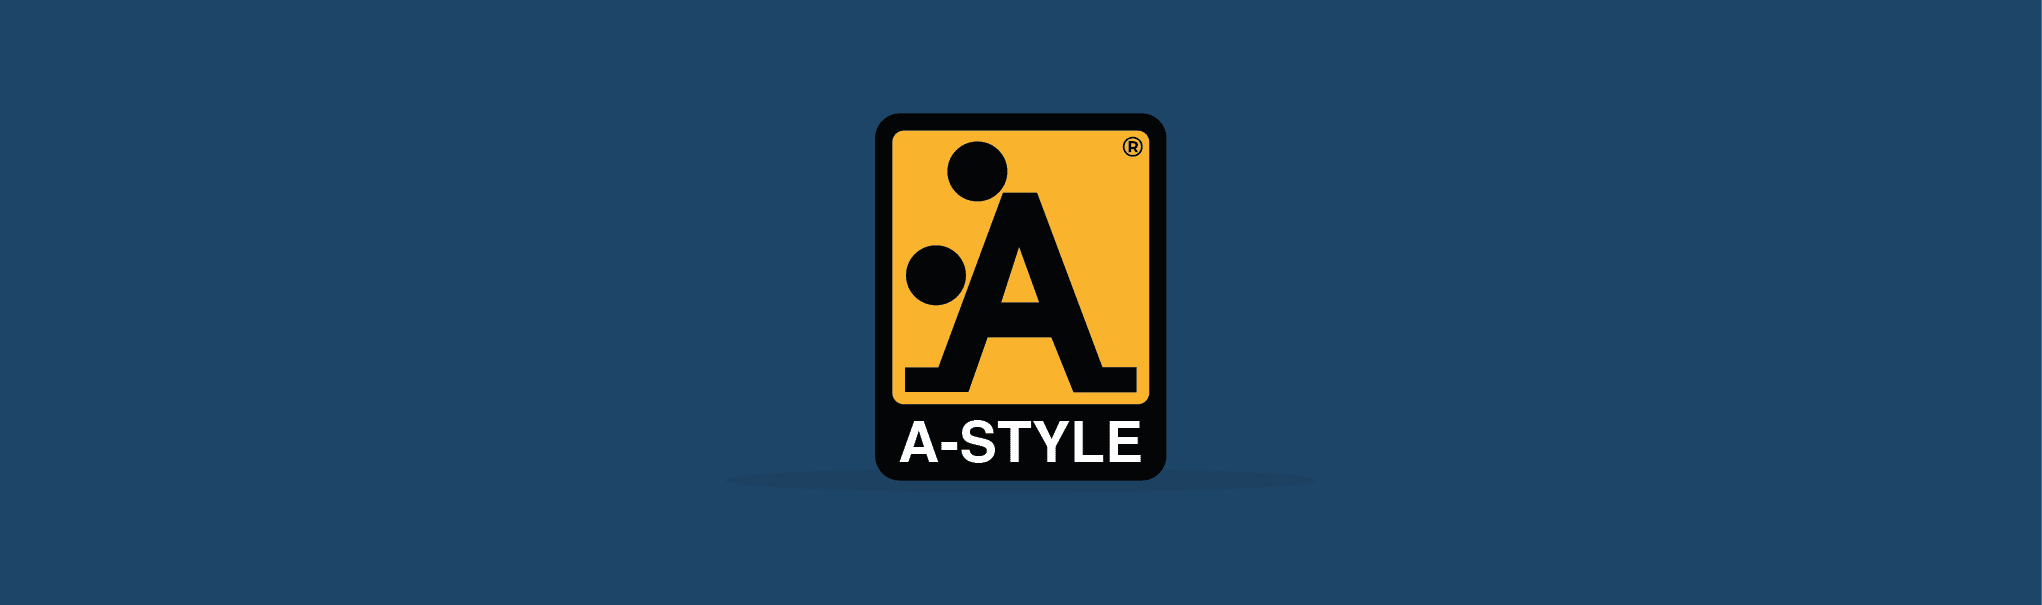 In questo articolo andremo a vedere il caso di A-Style, ovvero quando il logo nasce prima dell'azienda